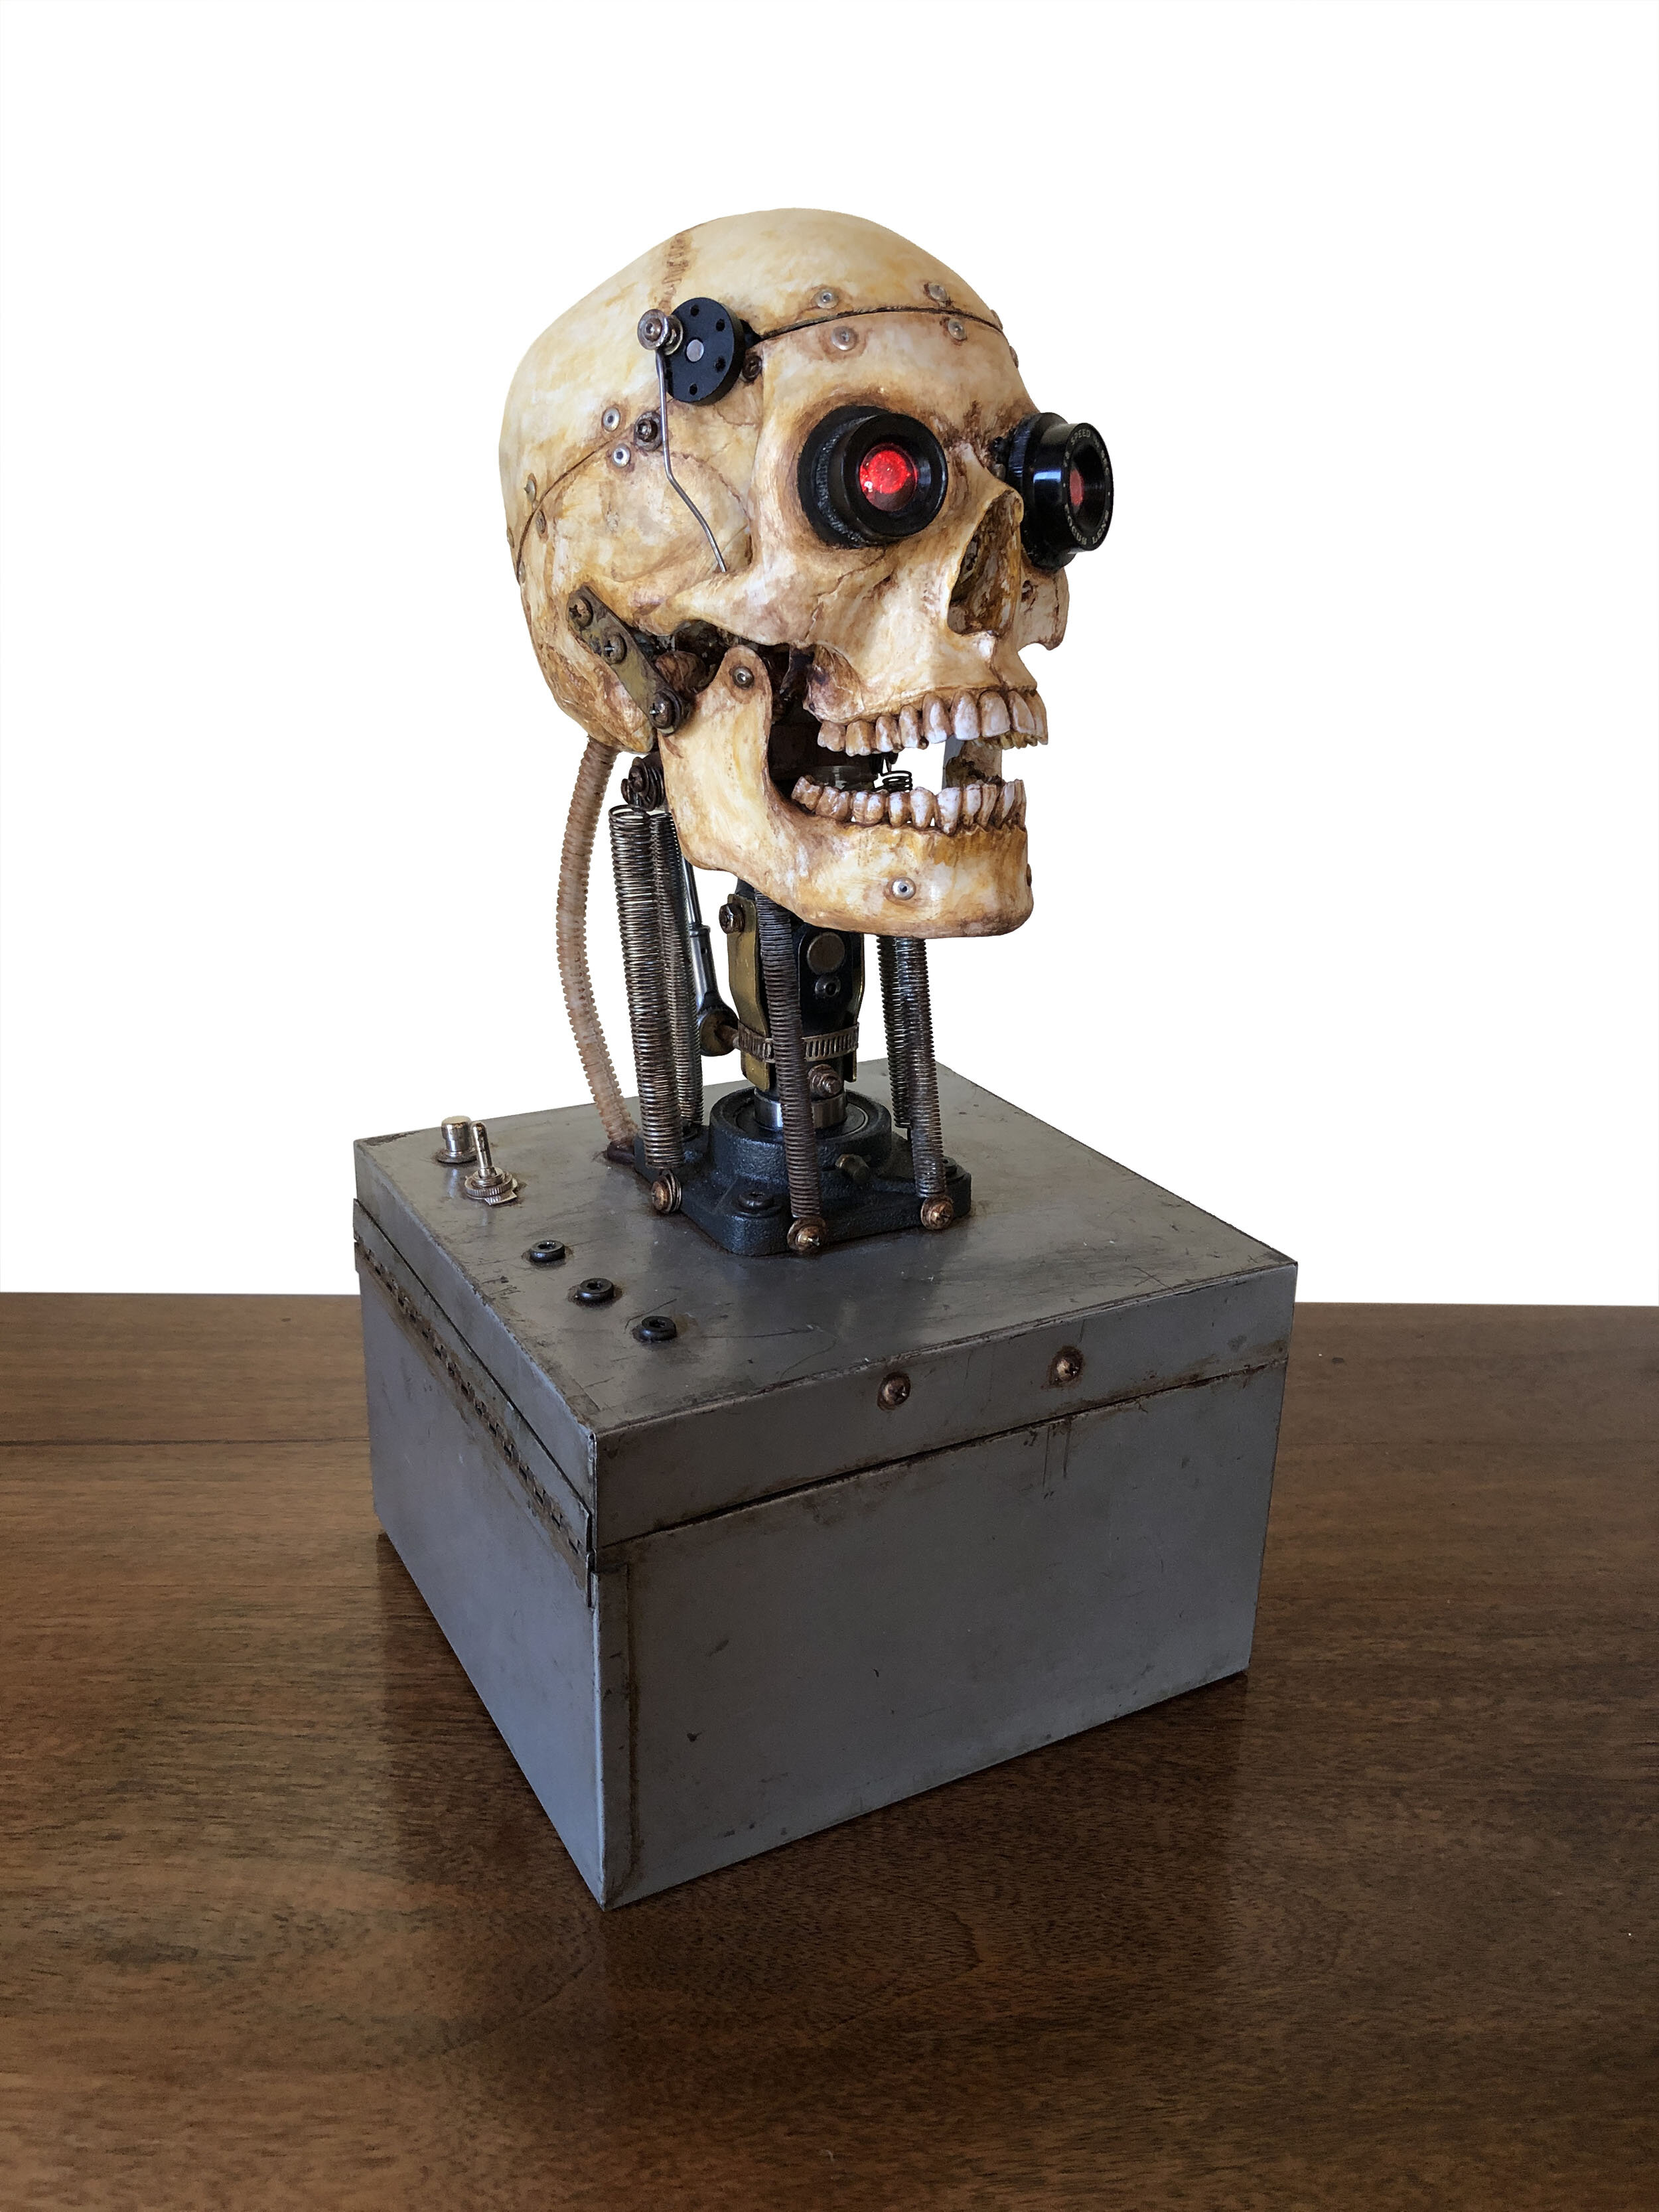 "Animatronic Human Skull with Laser-like Eyes"